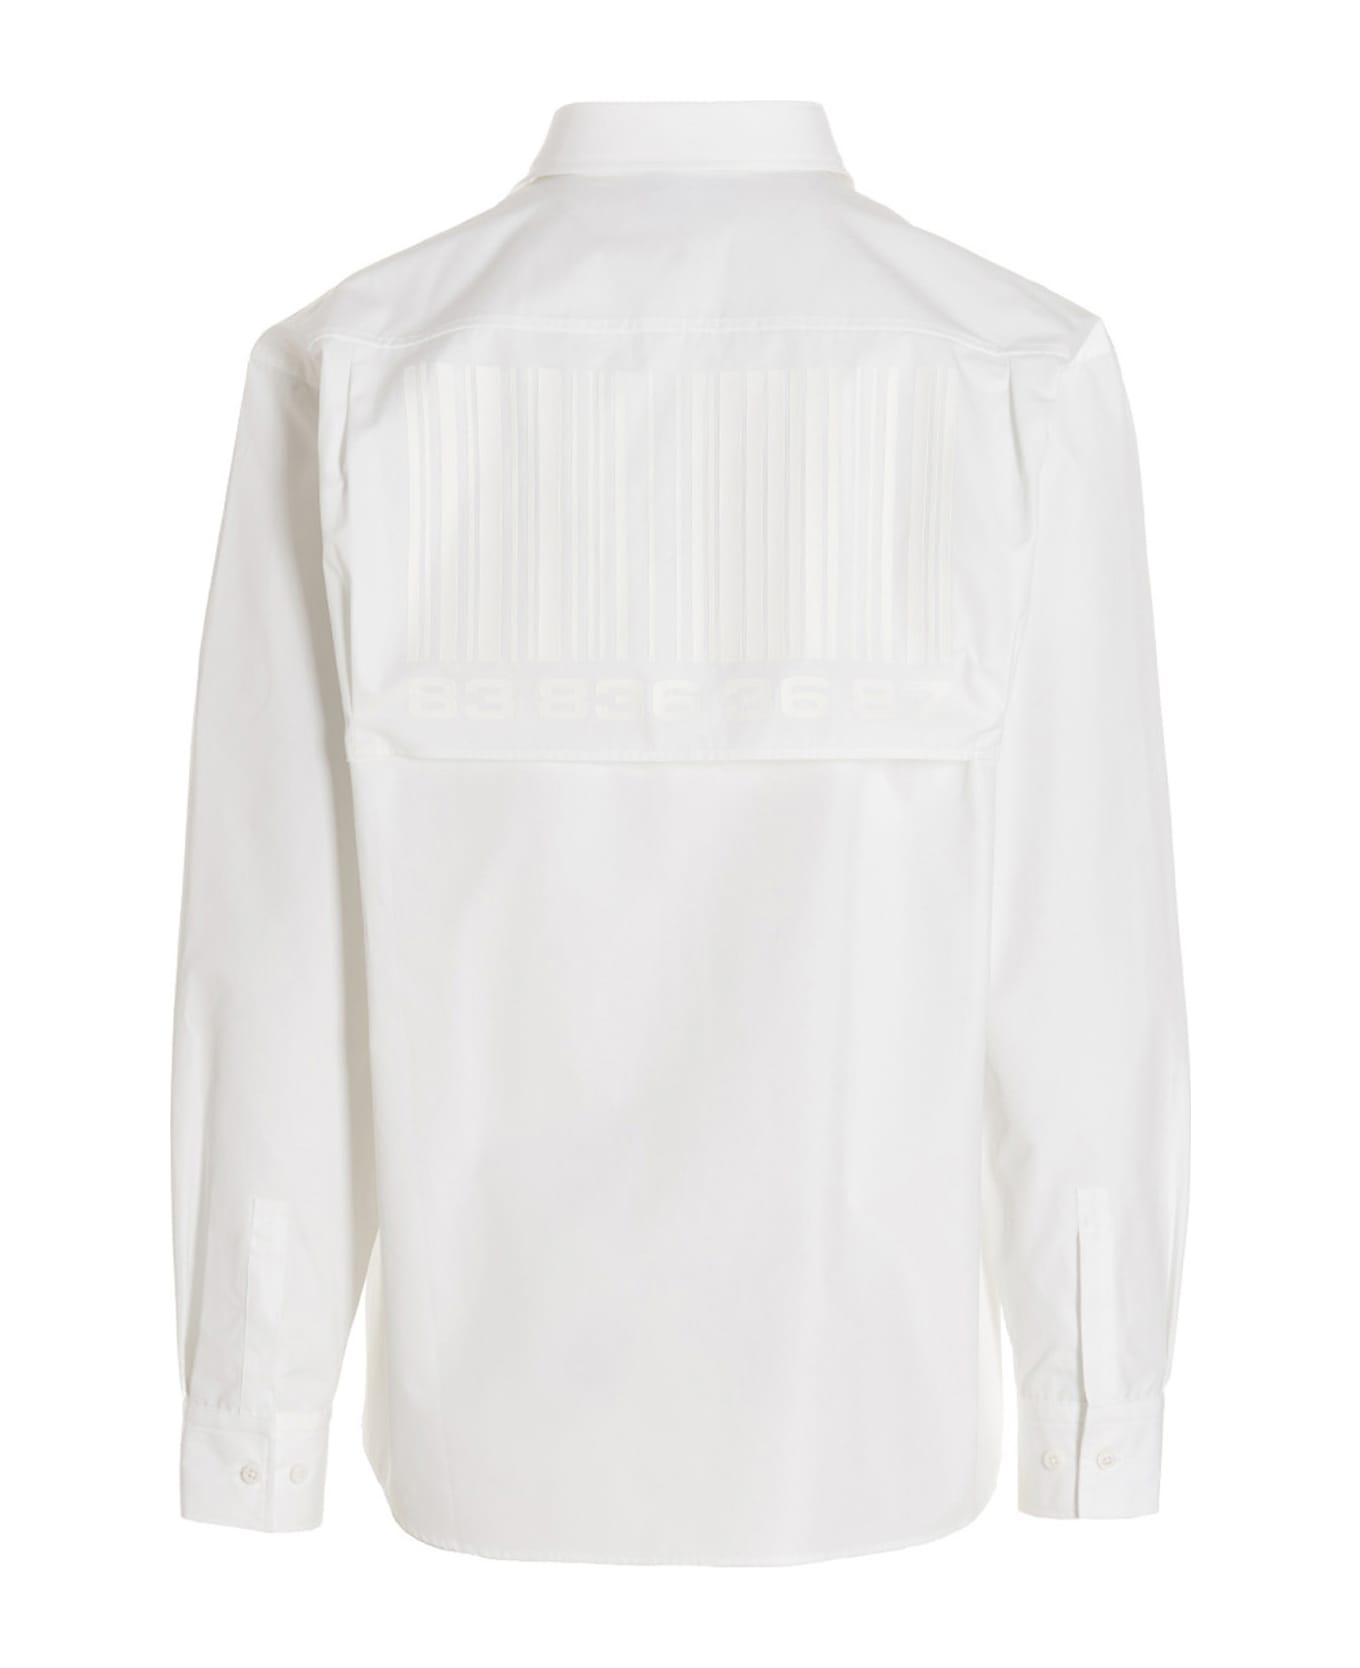 VTMNTS 'barcode' Shirt - White シャツ